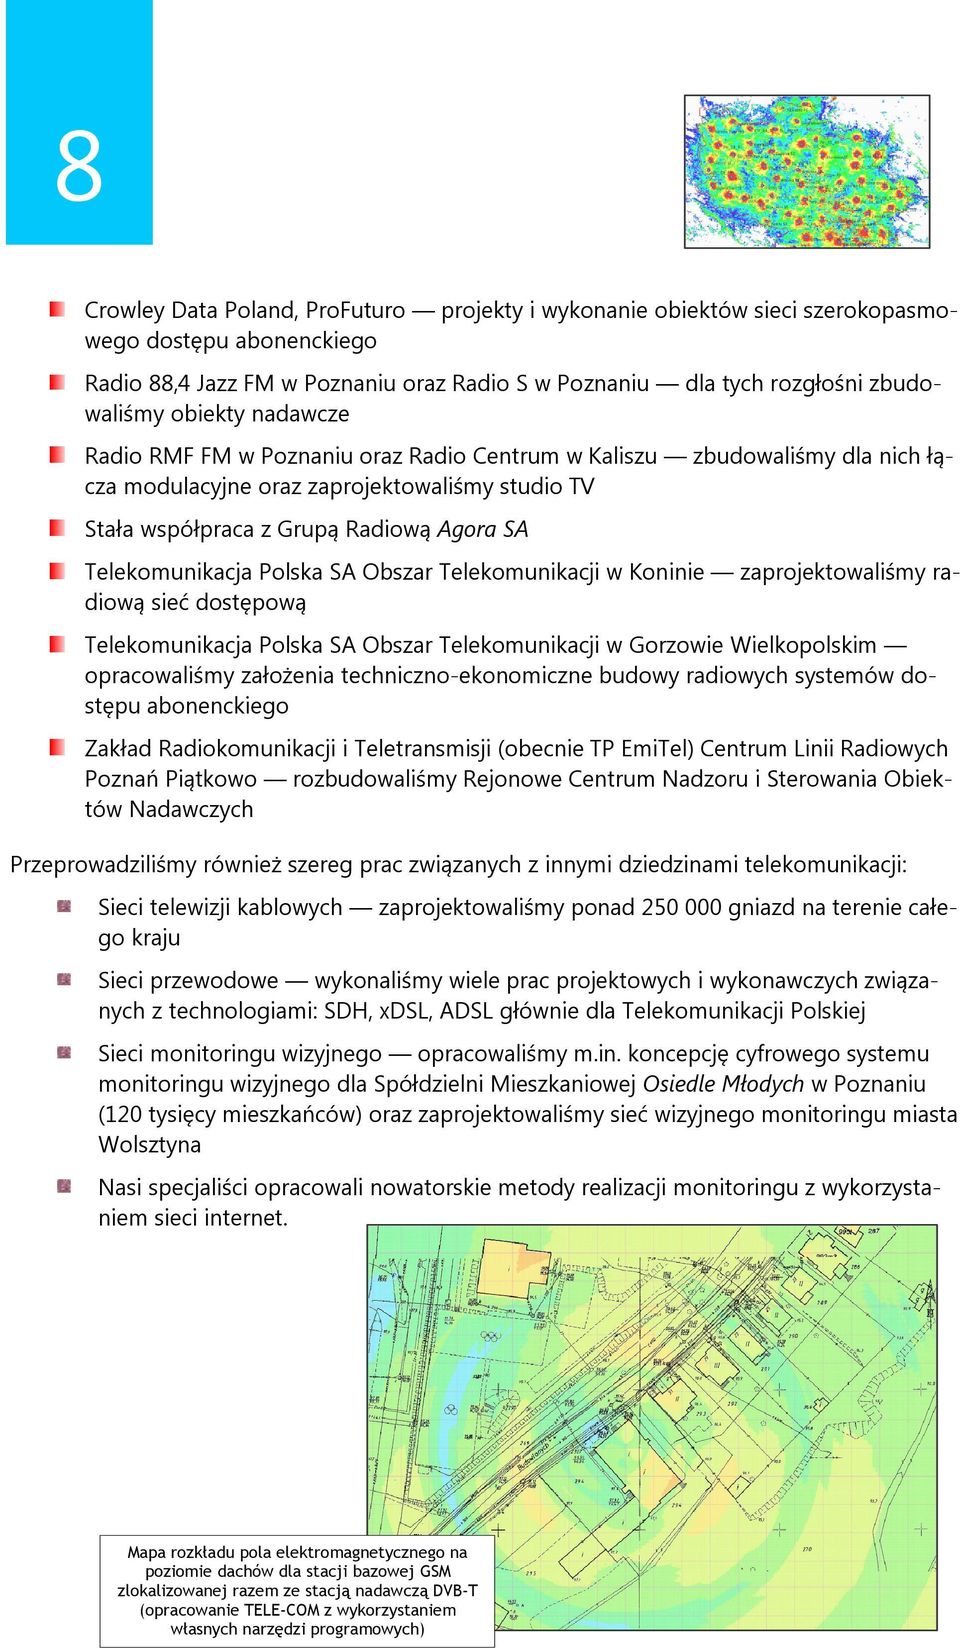 Telekomunikacja Polska SA Obszar Telekomunikacji w Koninie zaprojektowaliśmy radiową sieć dostępową Telekomunikacja Polska SA Obszar Telekomunikacji w Gorzowie Wielkopolskim opracowaliśmy założenia